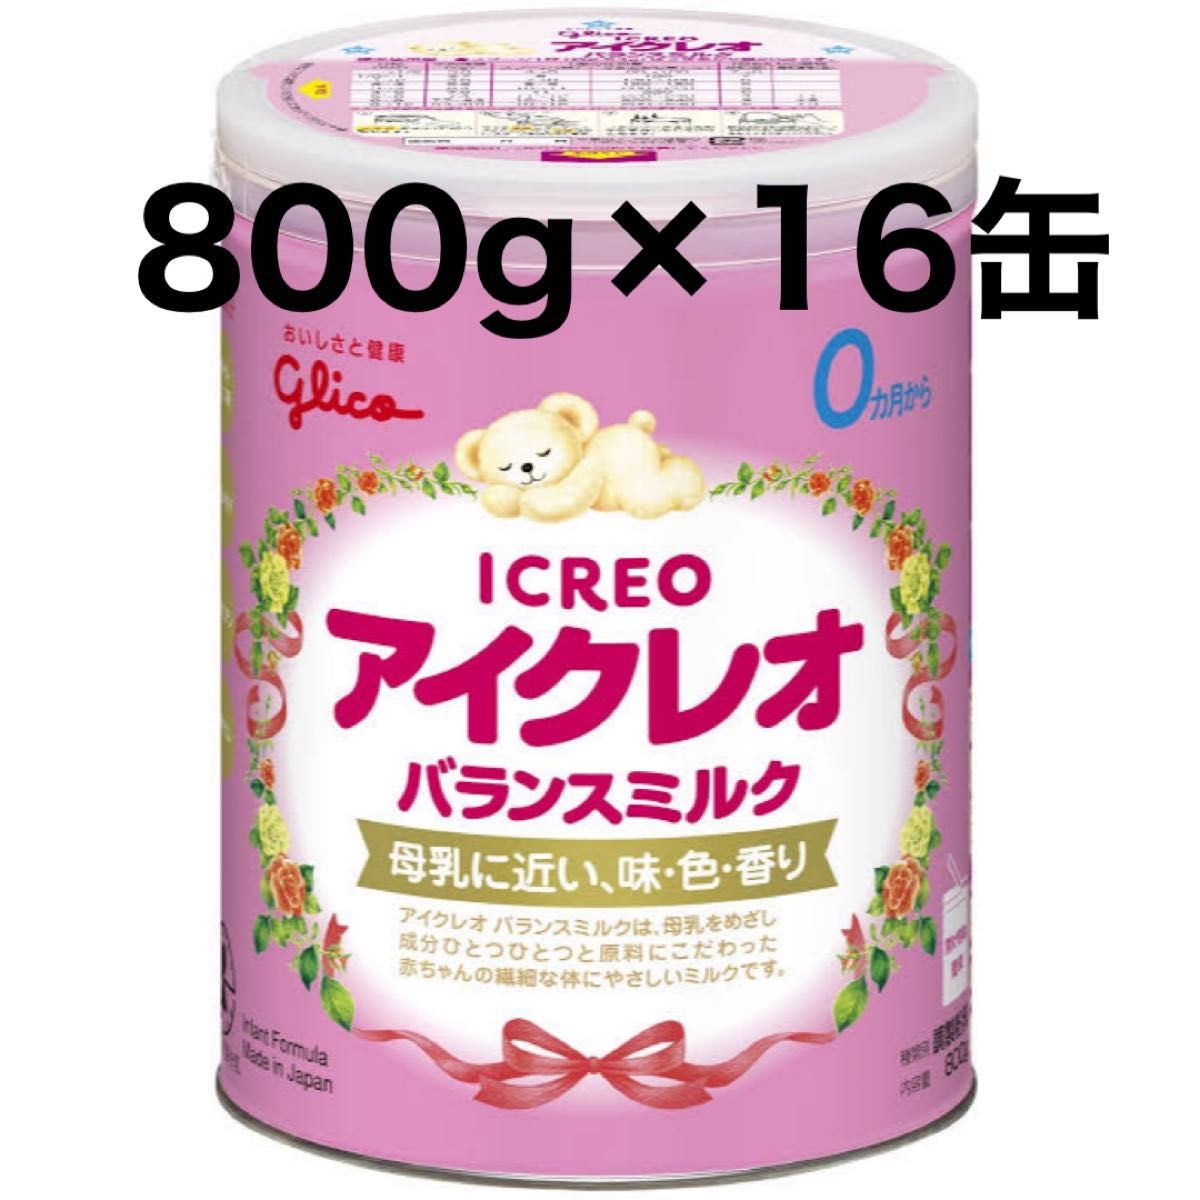 アイクレオ 粉ミルク缶 800g×16